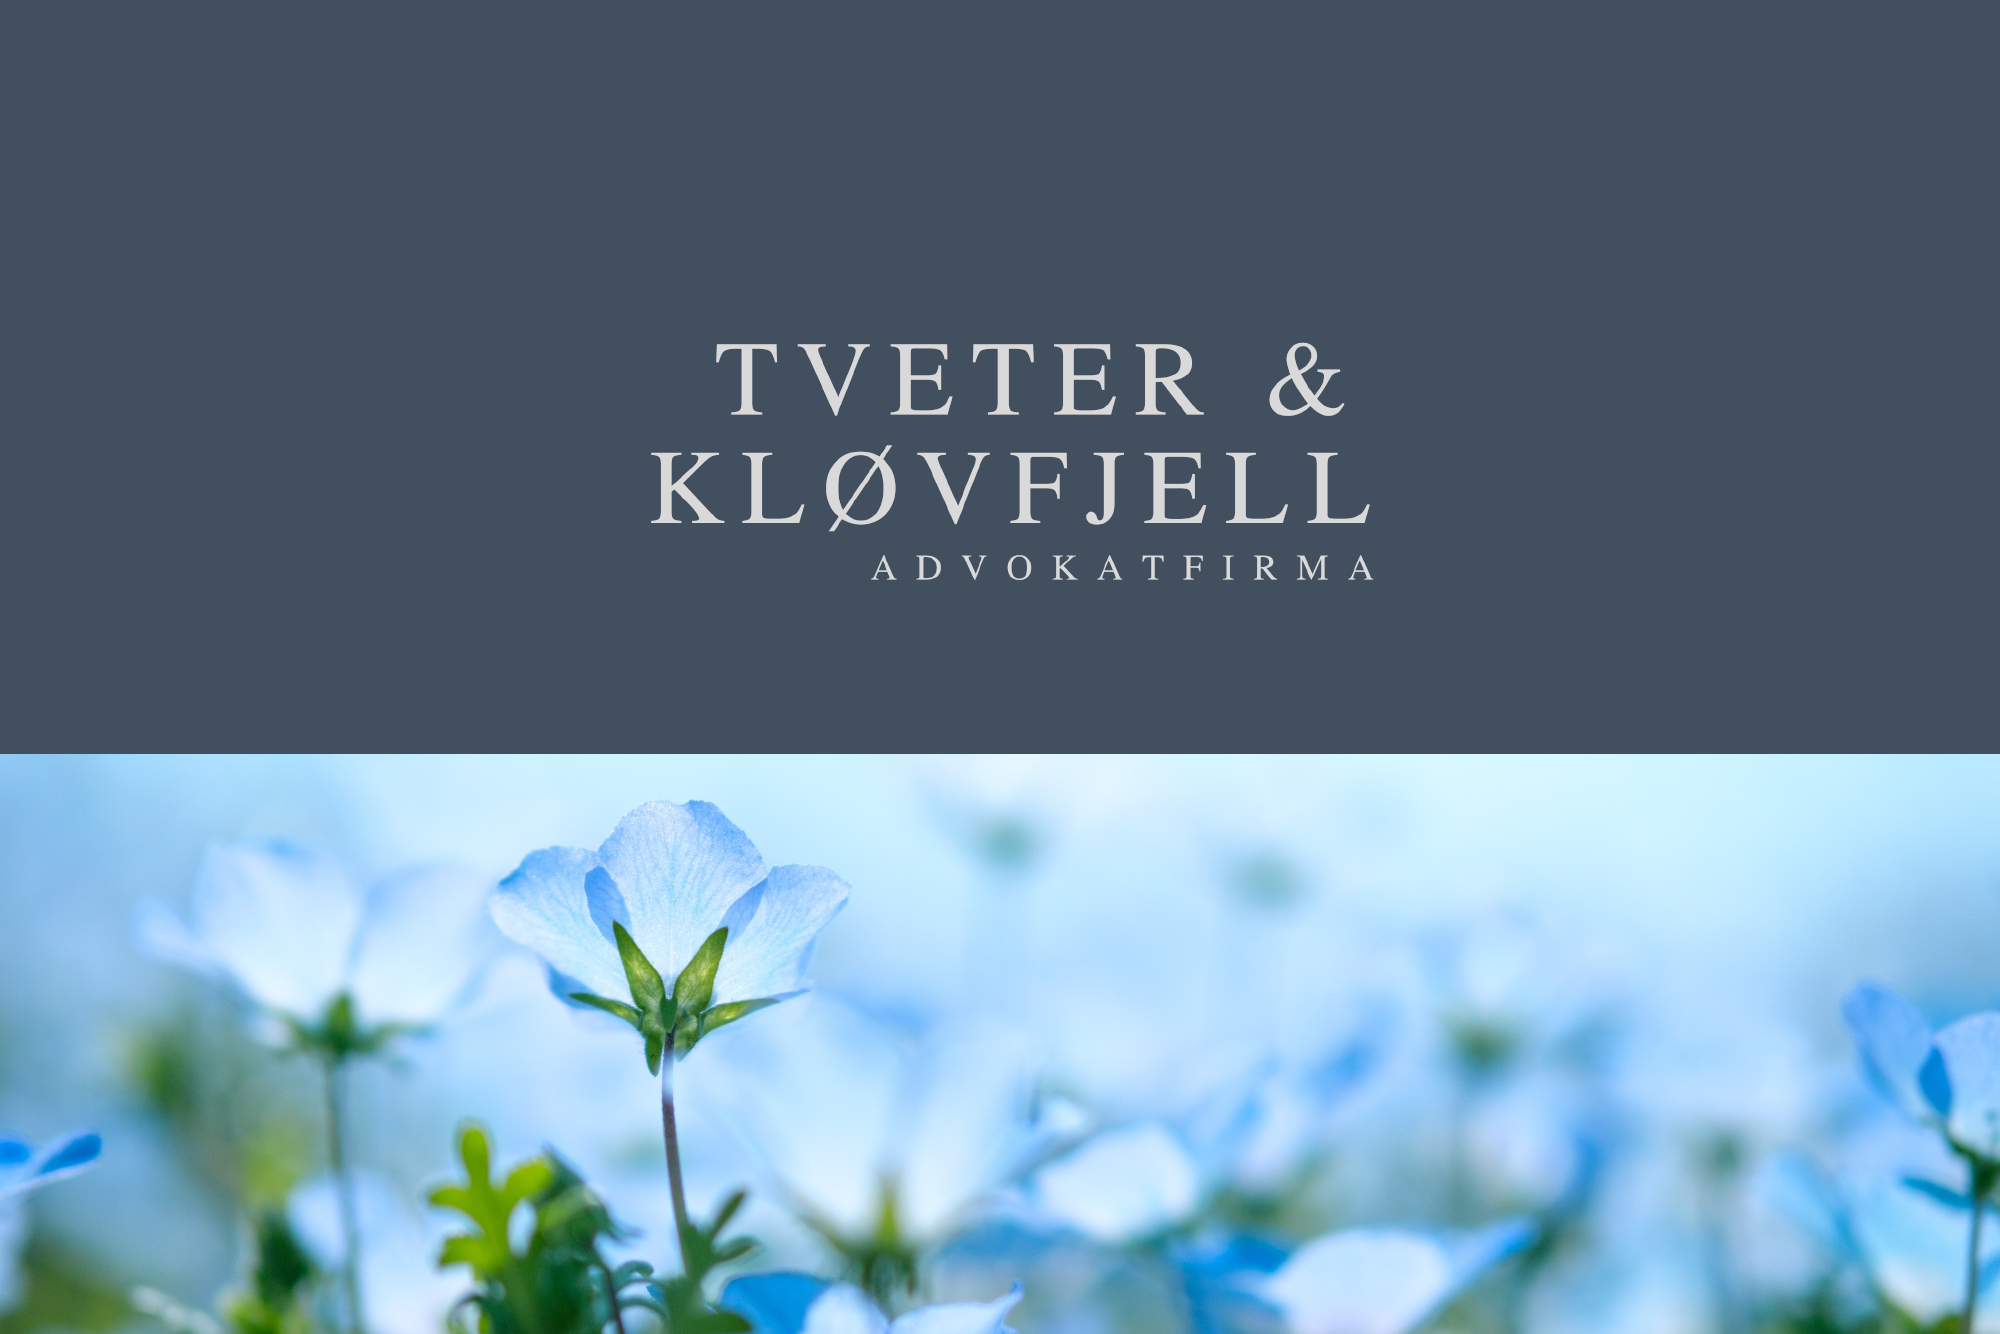 Plakat med Tveter og Kjøvfjell-logo og bile av blåklokker under